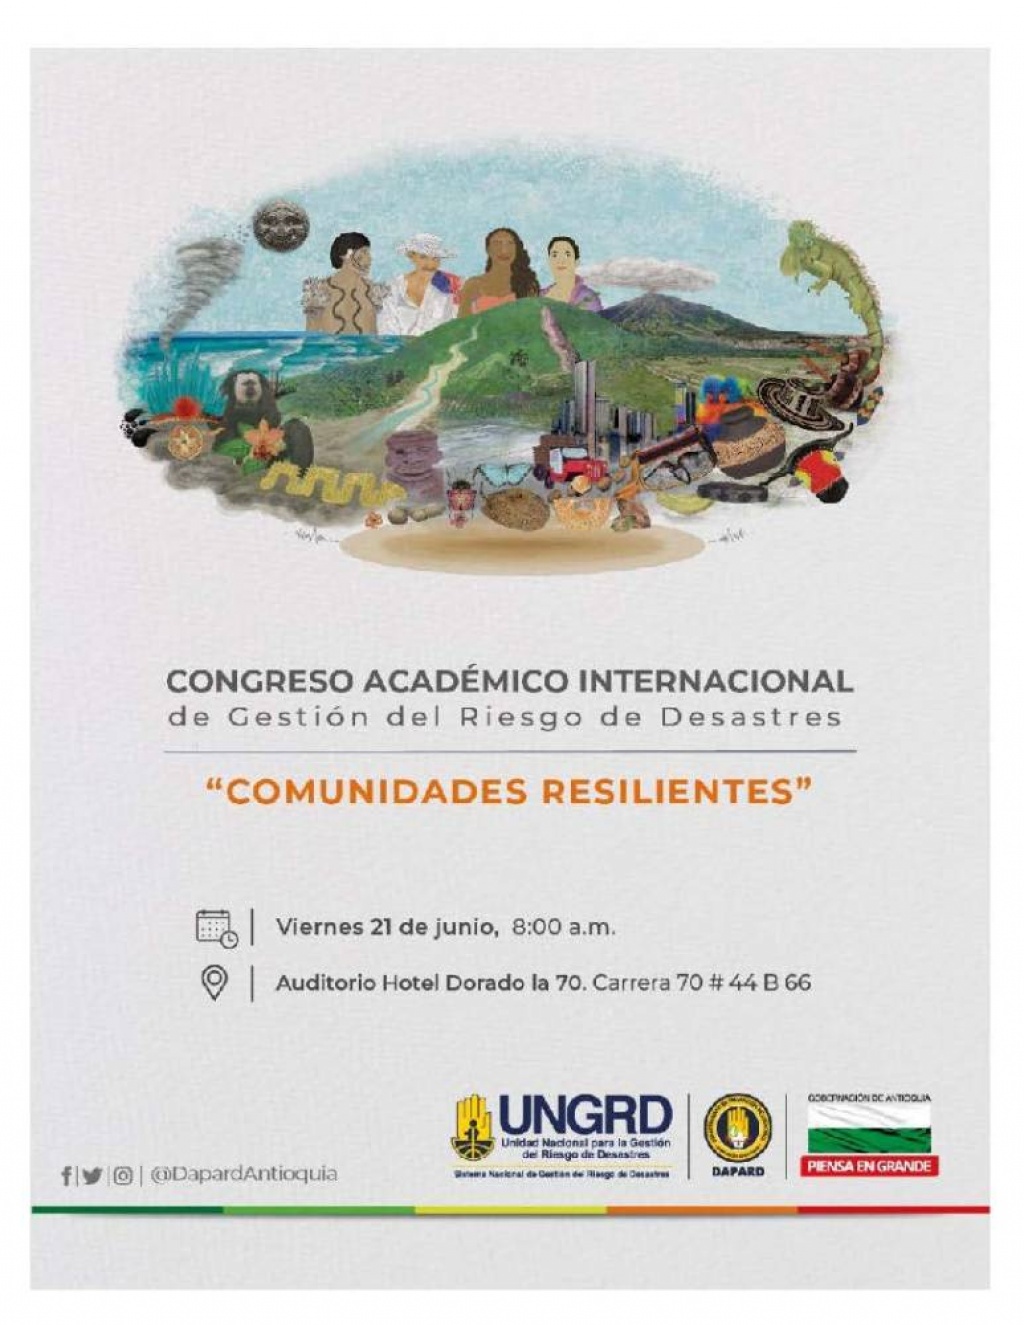 Congreso Académico Internacional de Gestión del Riesgo de Desastres